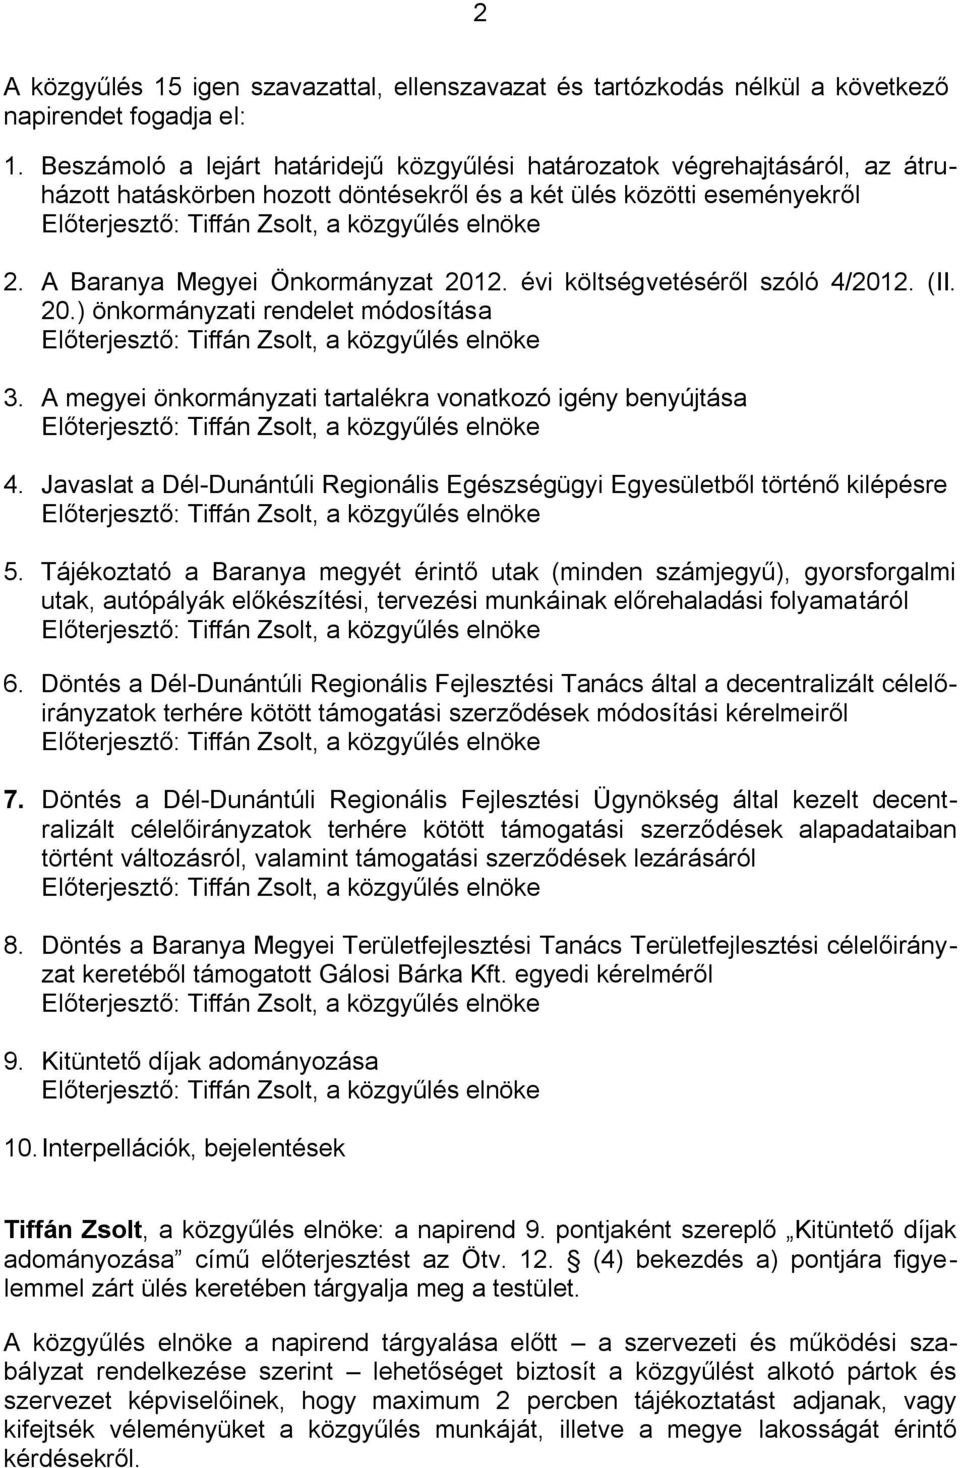 A Baranya Megyei Önkormányzat 2012. évi költségvetéséről szóló 4/2012. (II. 20.) önkormányzati rendelet módosítása Előterjesztő: Tiffán Zsolt, a közgyűlés elnöke 3.